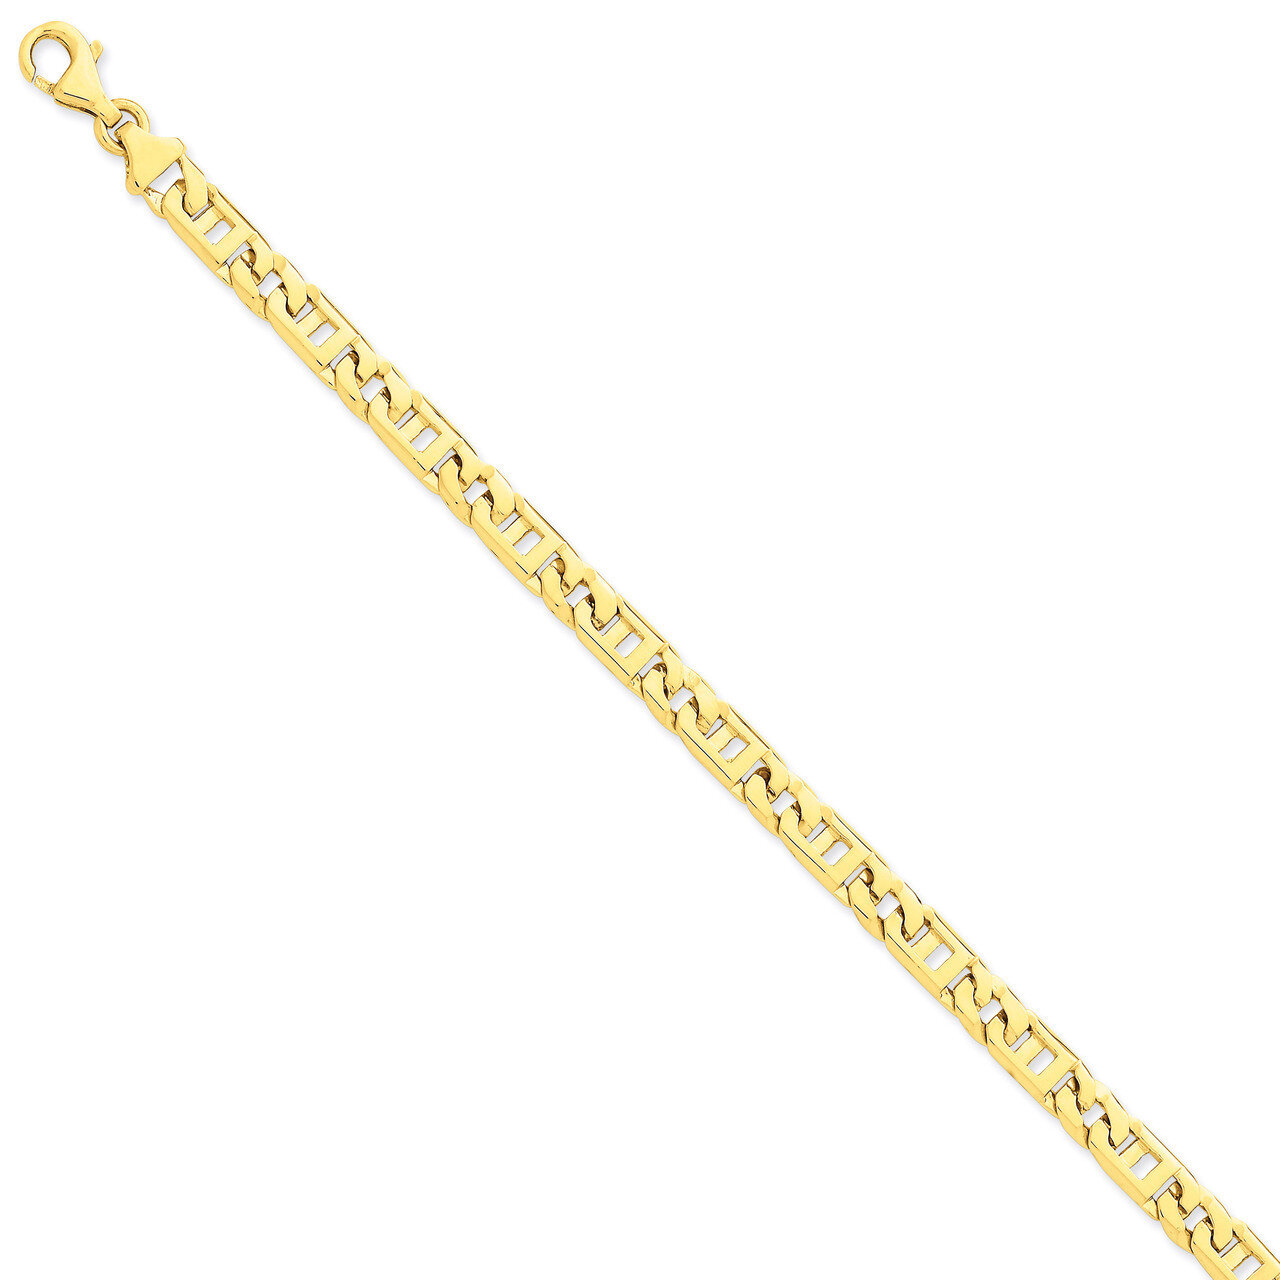 6mm Hand-polished Link Necklace 18 Inch 14k Gold LK171-18